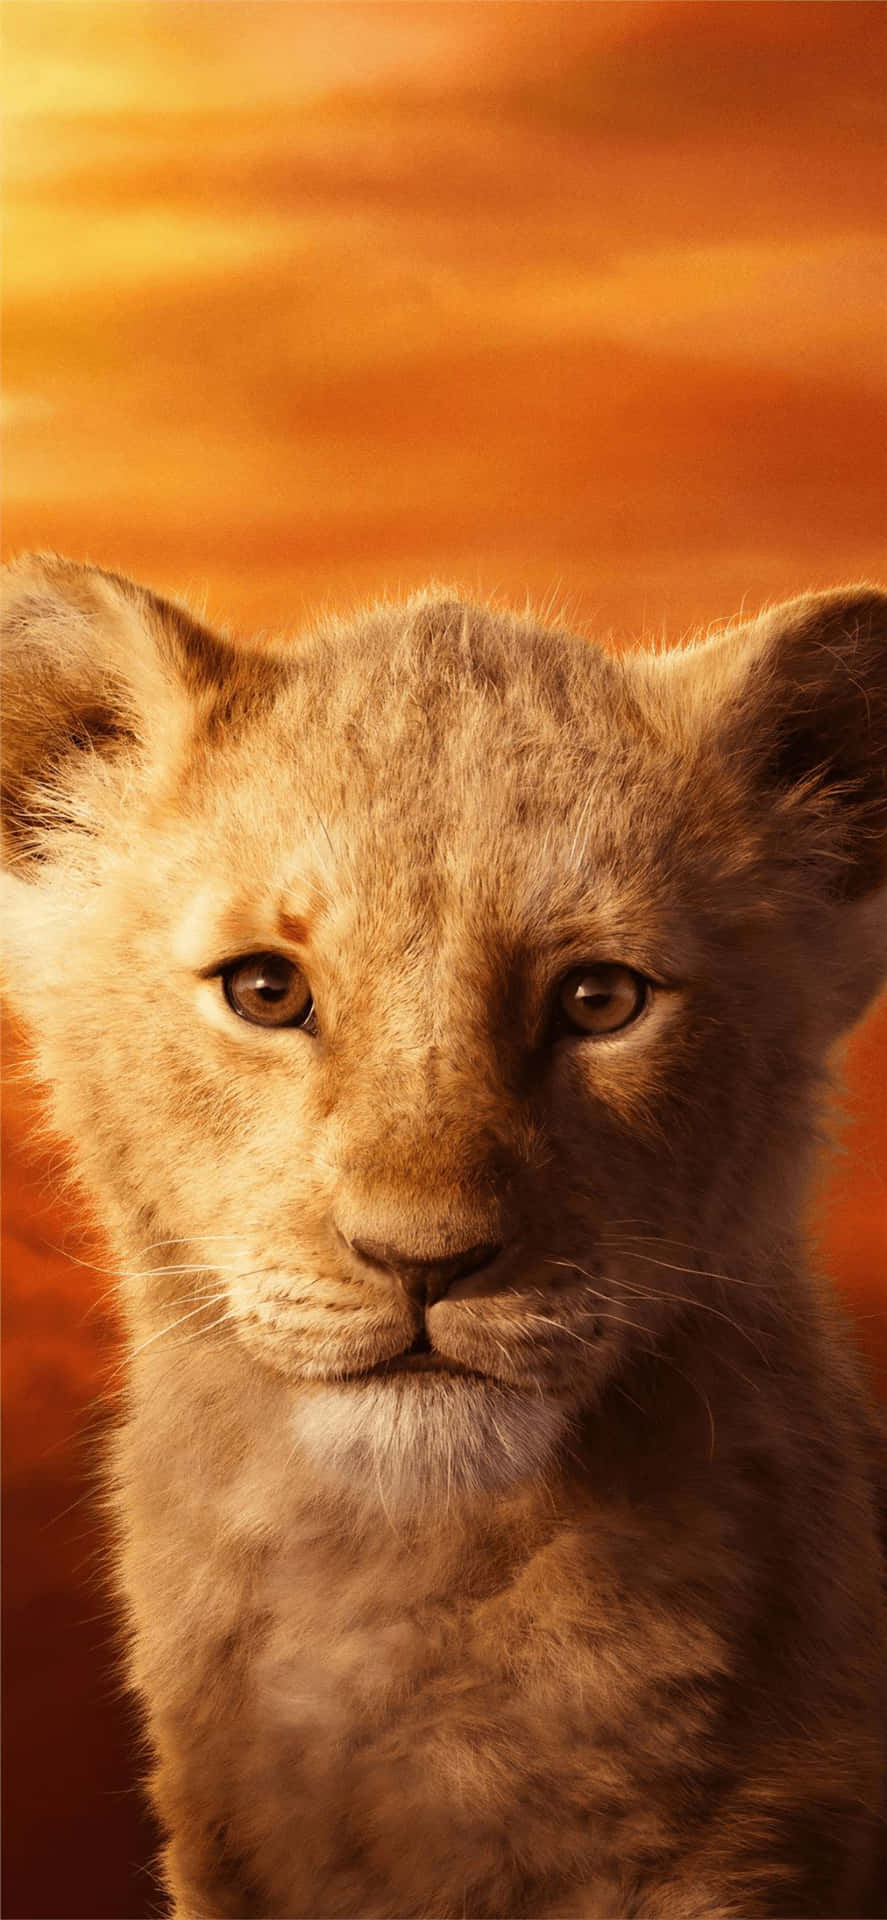 Young Lion Cub Portrait